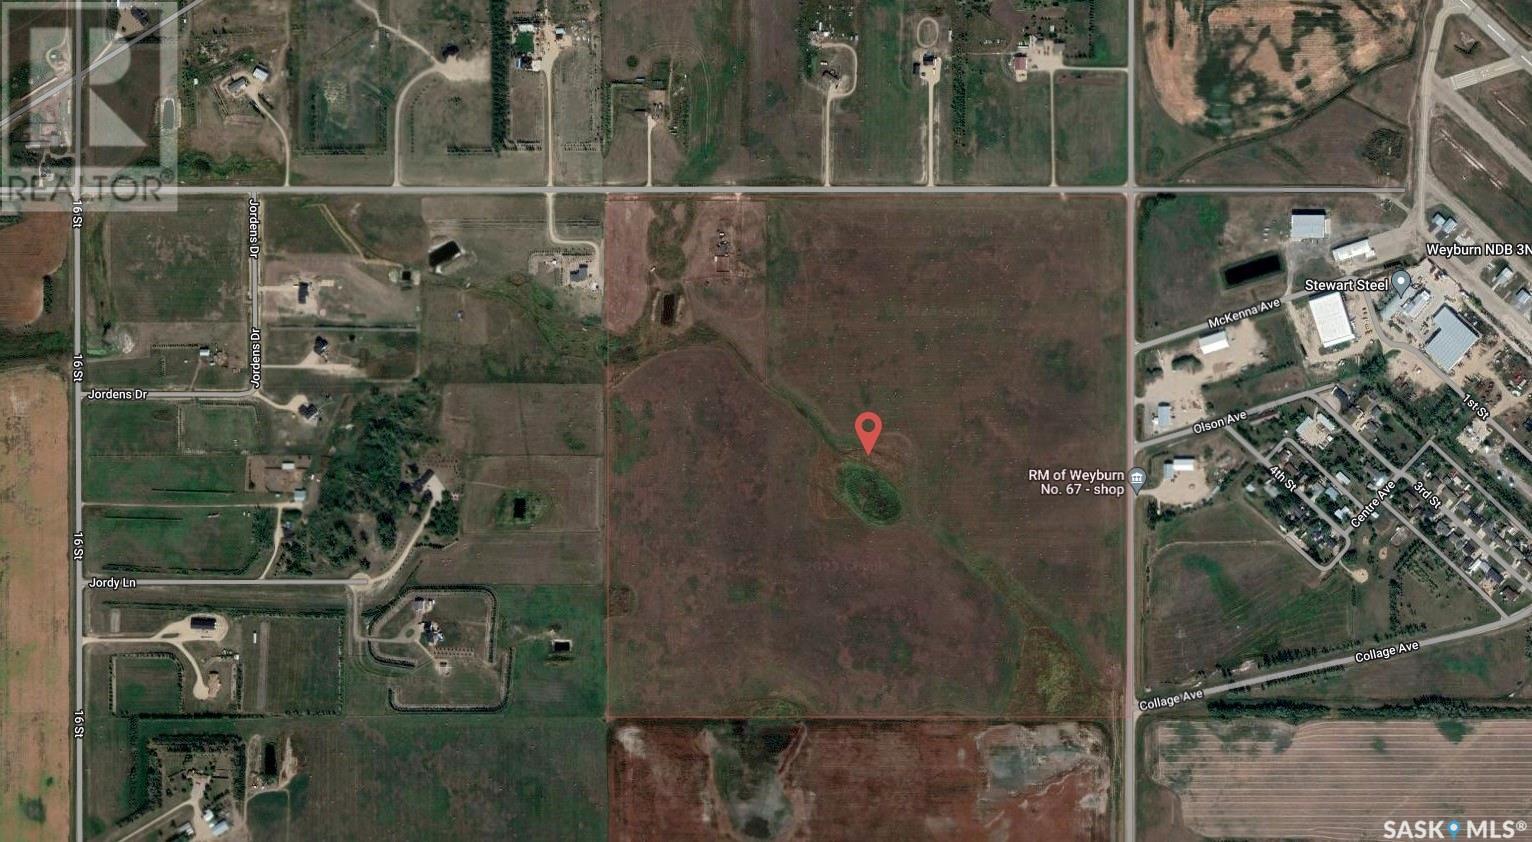 RM of Weyburn Farm & Development Land, weyburn rm no. 67, Saskatchewan